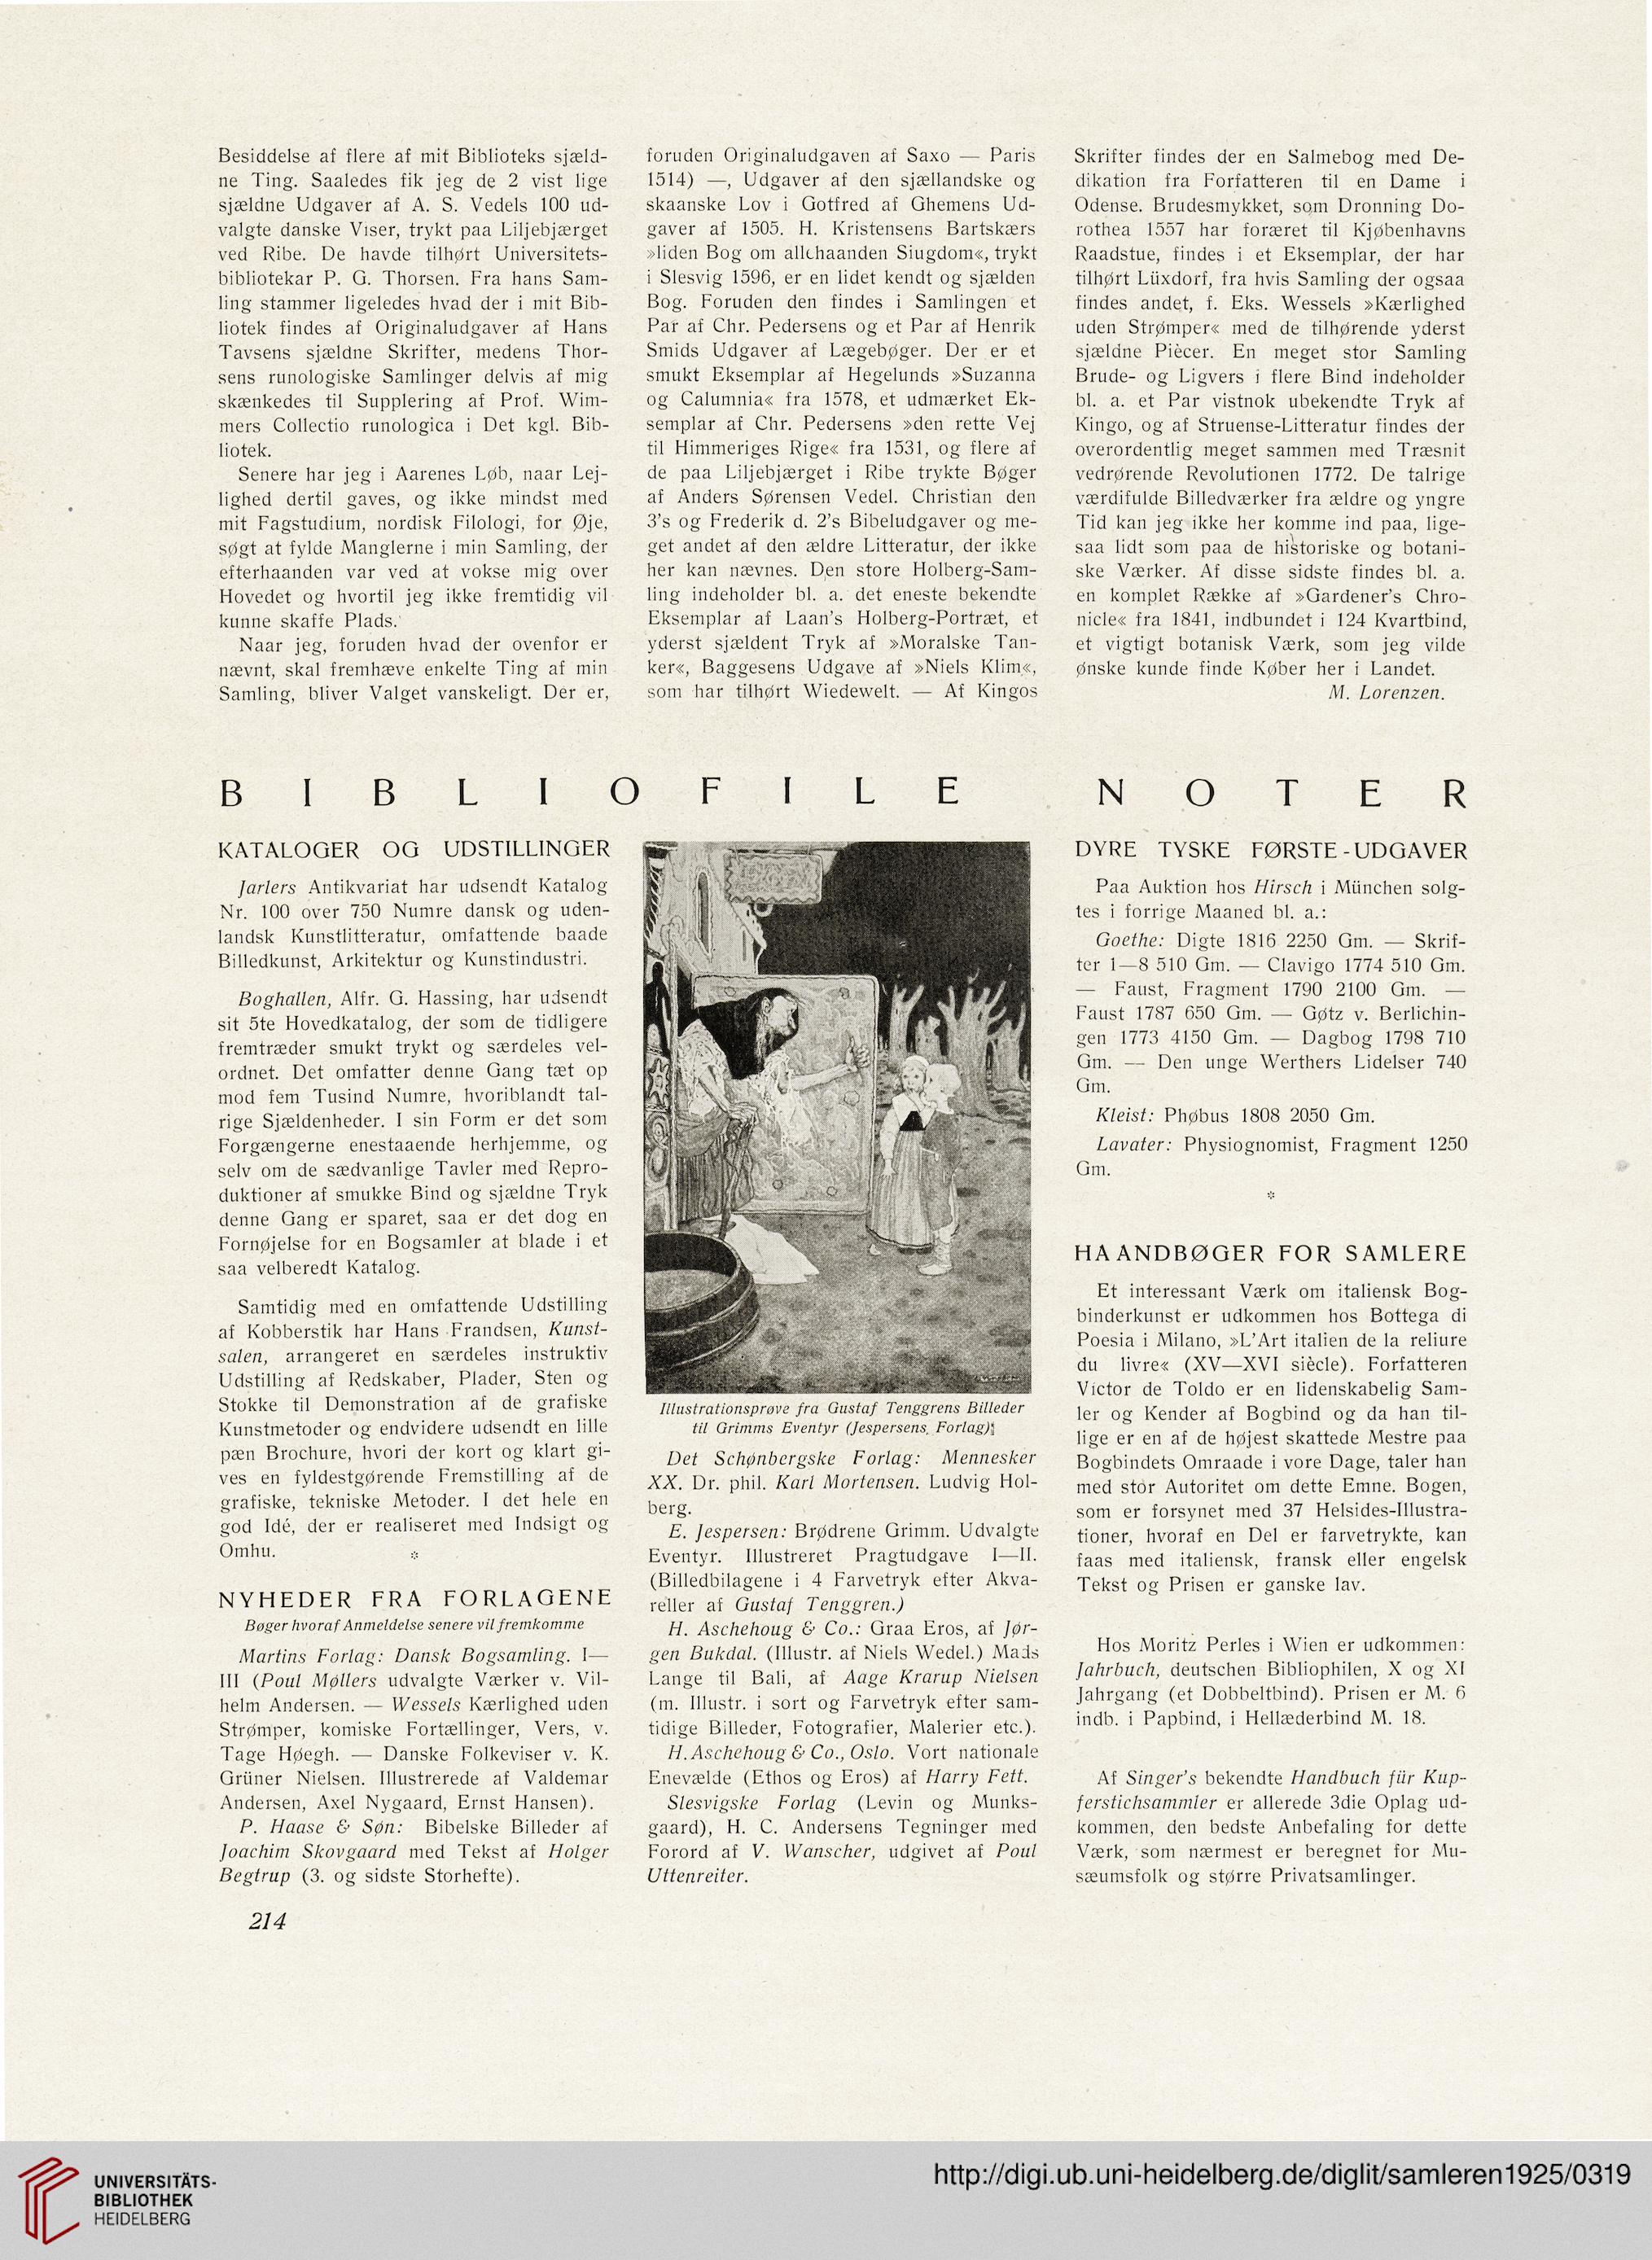 Eksisterer Barmhjertige foran Samleren: kunsttidsskrift (2.1925)